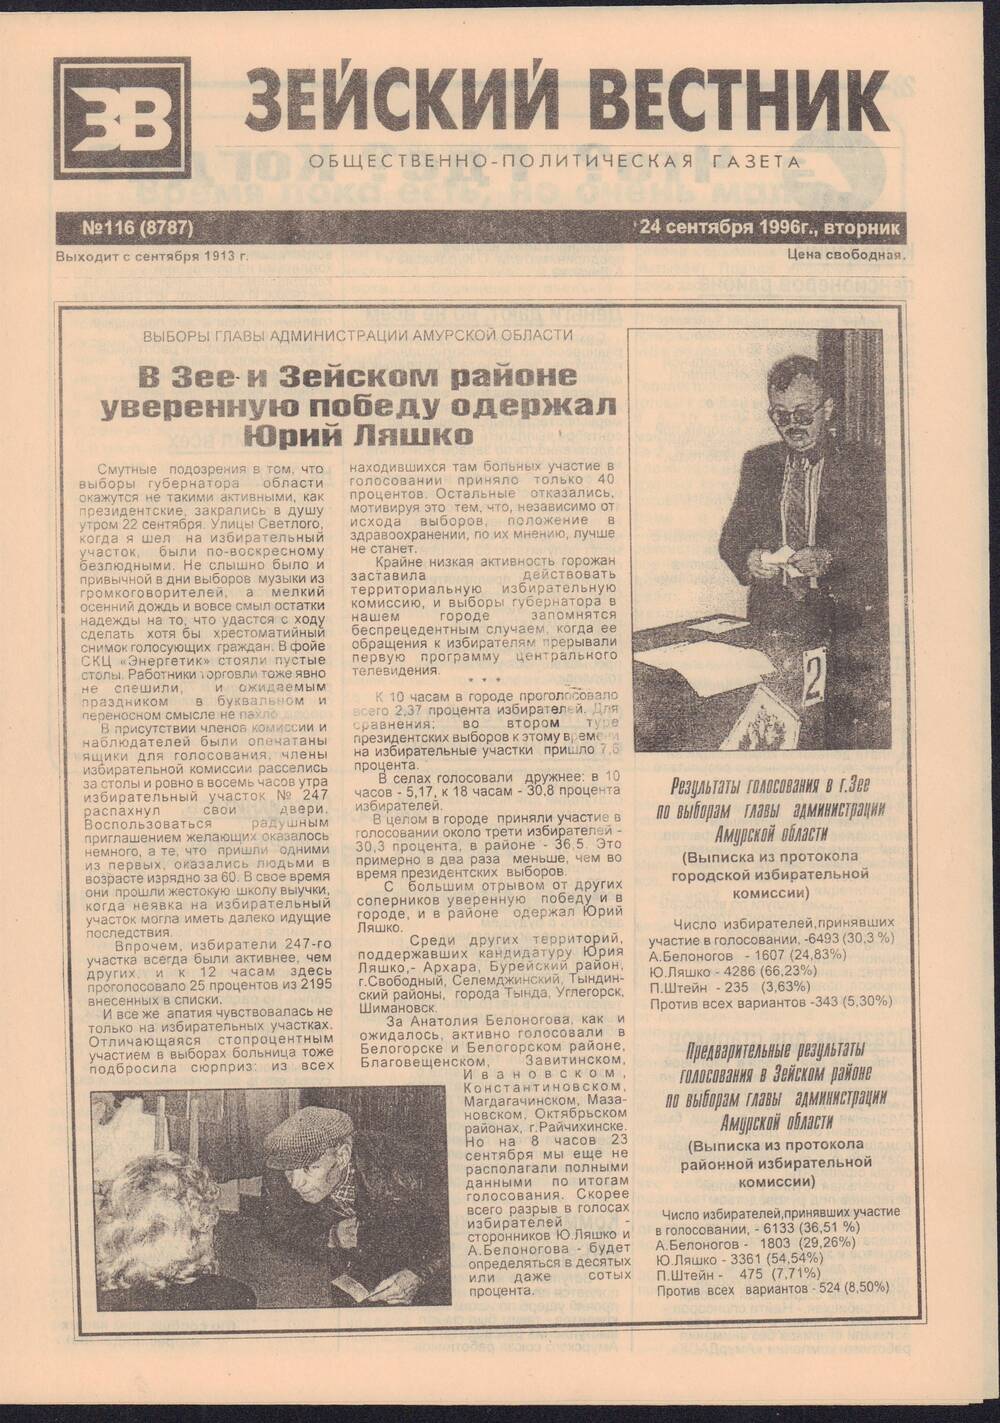 Газета Зейский вестник №116 от 24 сентября 1996 года с материалами по выборам Главы Администрации Амурской области.